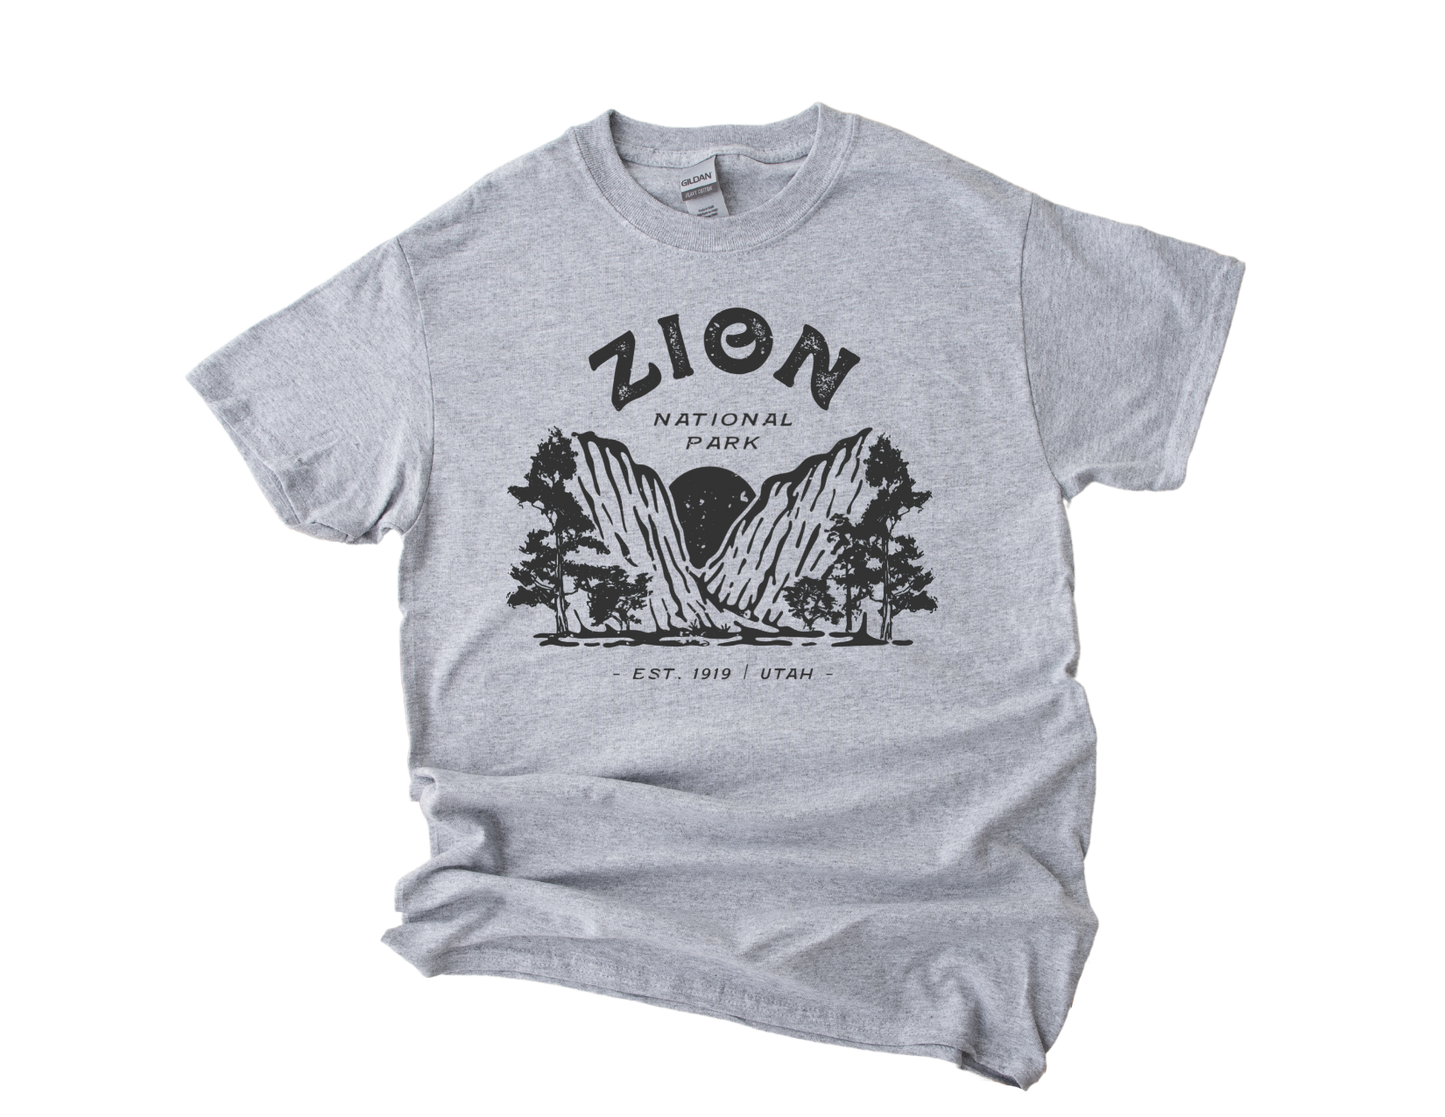 Zion National Park Unisex T-Shirt